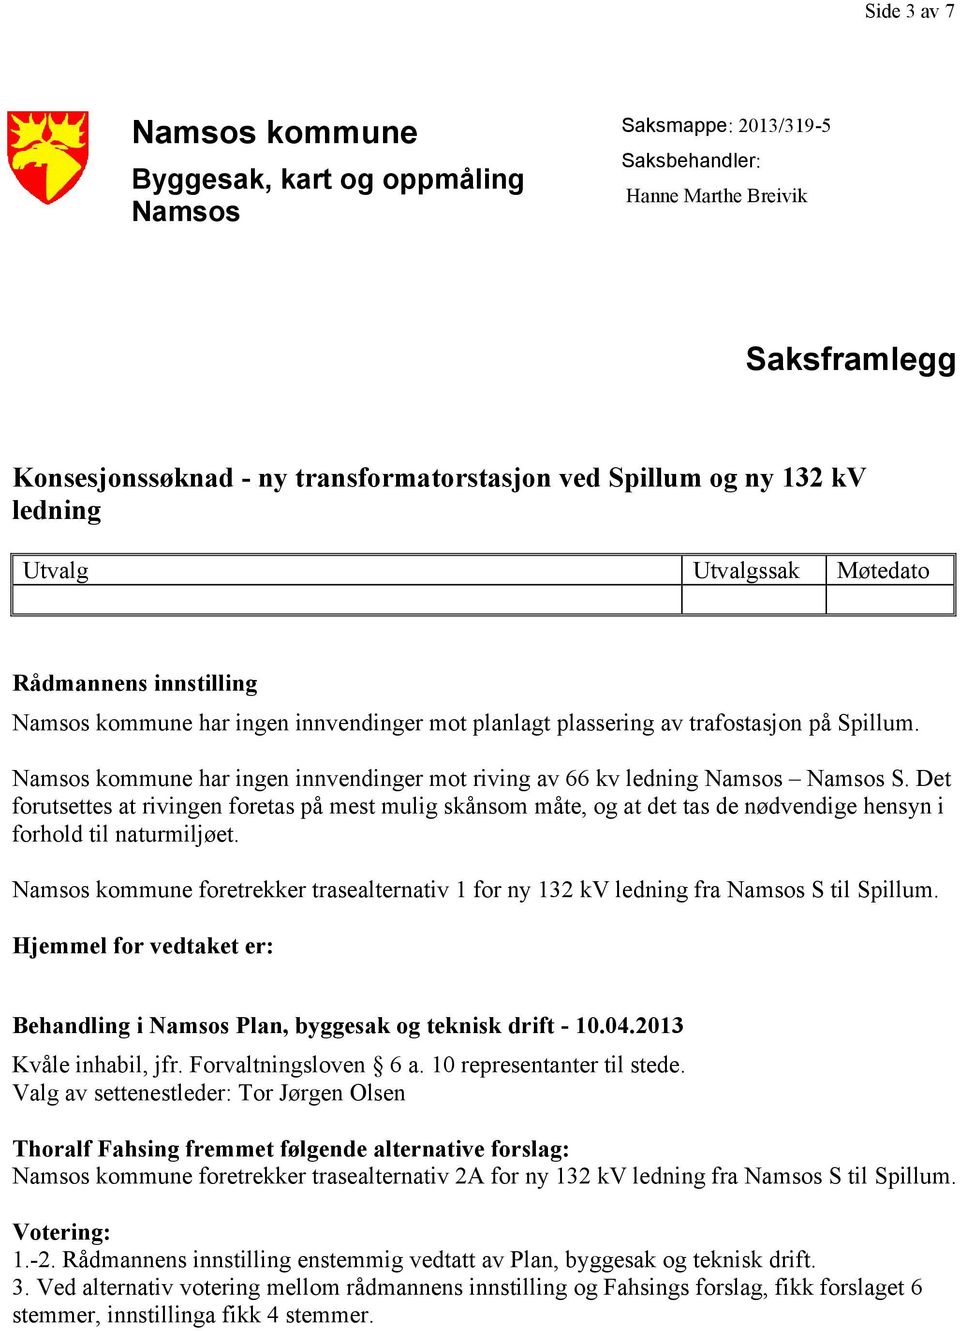 Namsos kommune har ingen innvendinger mot riving av 66 kv ledning Namsos Namsos S.